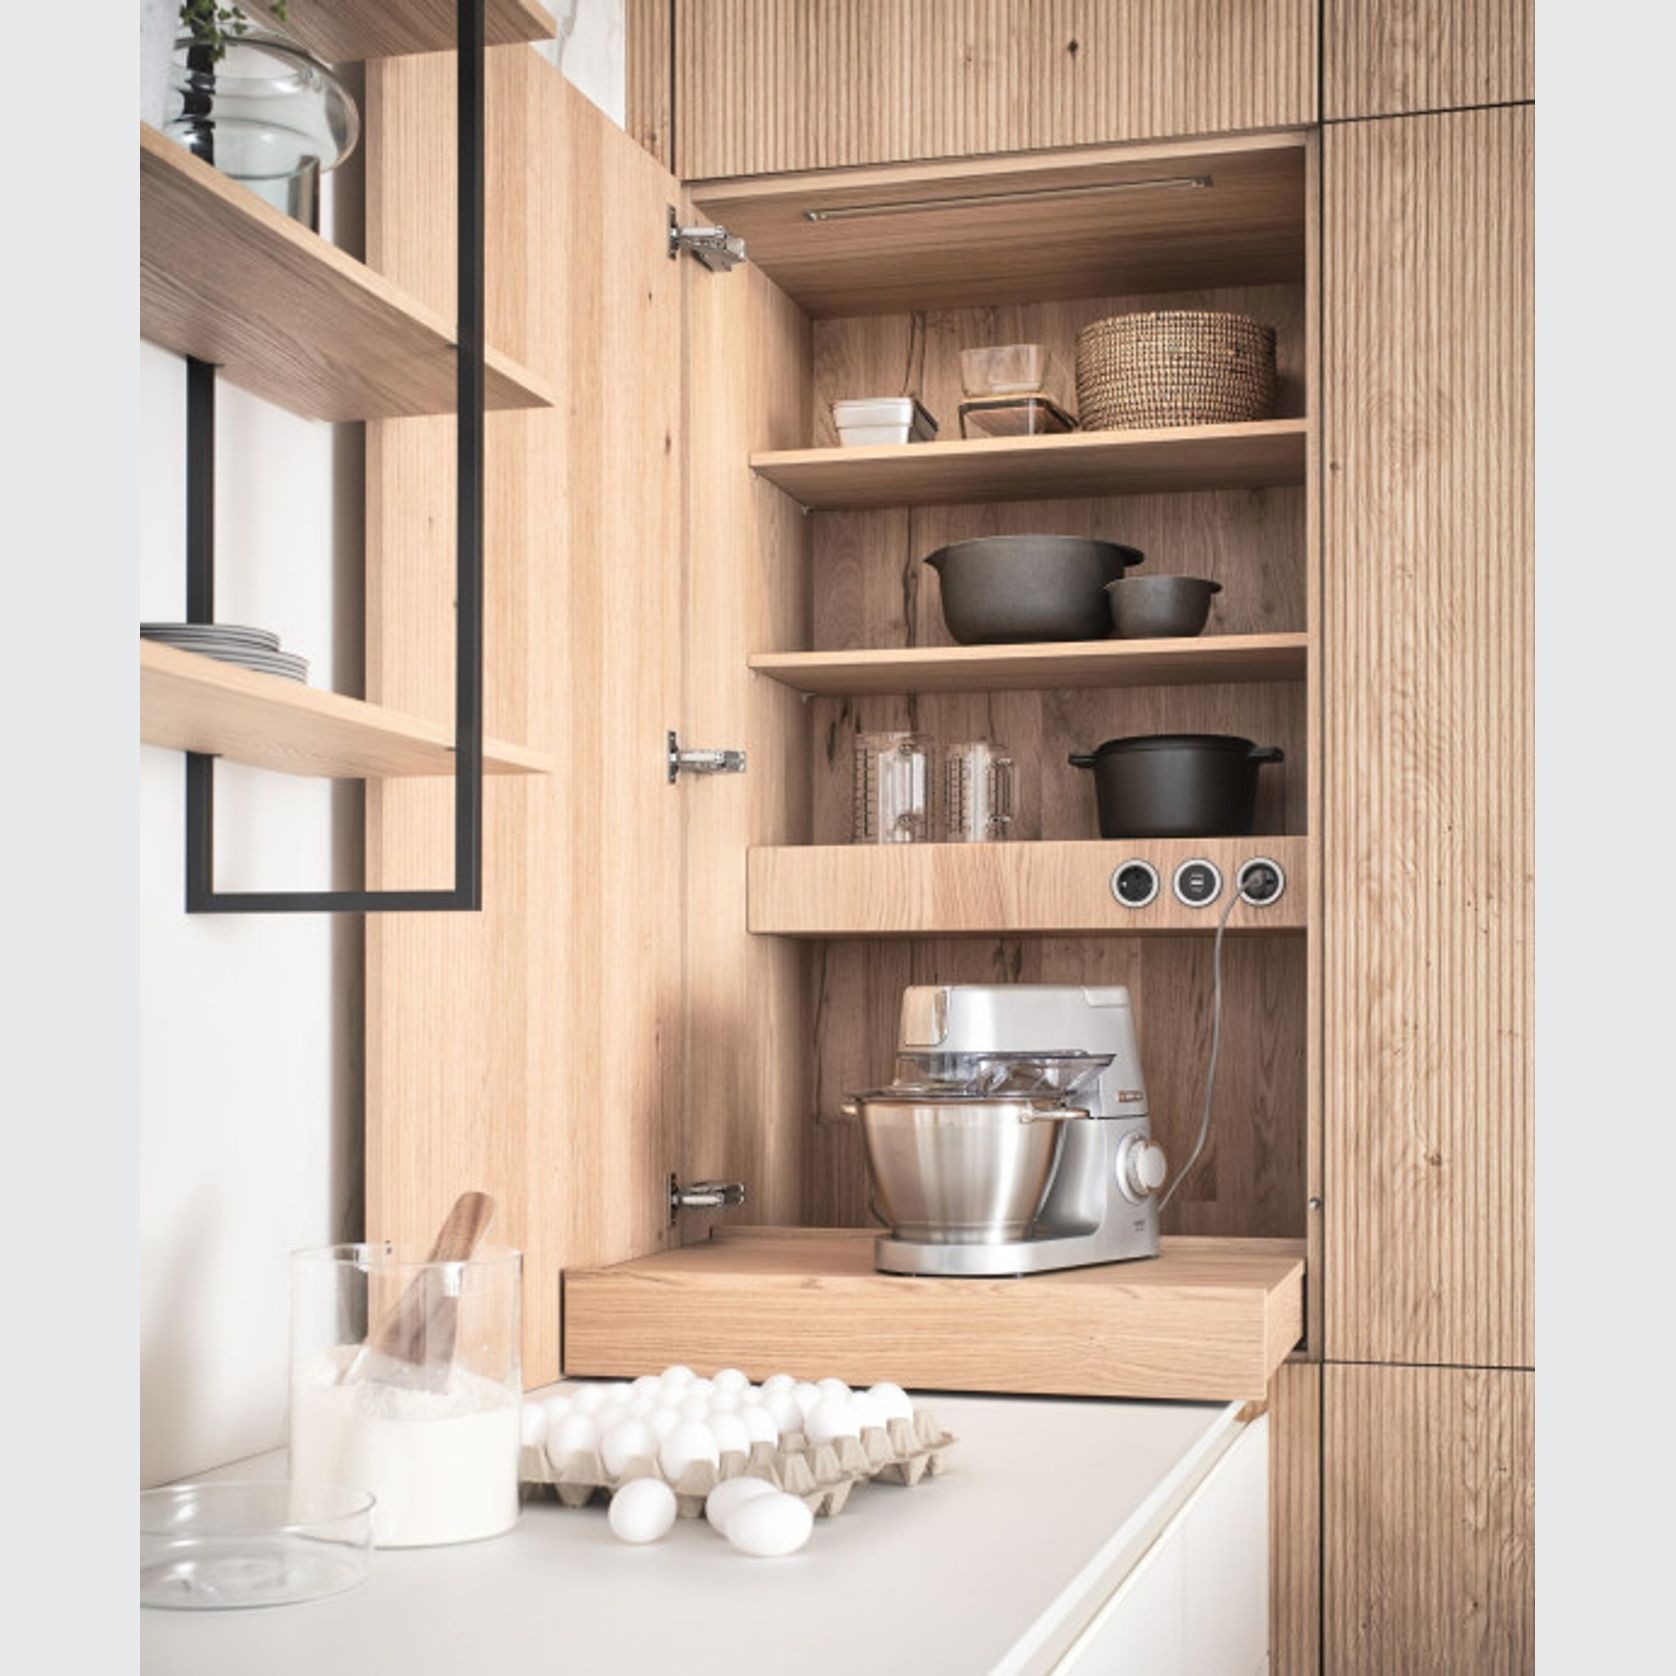 Bossa - Oak Genuine Wood Veneer Cabinetry & Panels gallery detail image